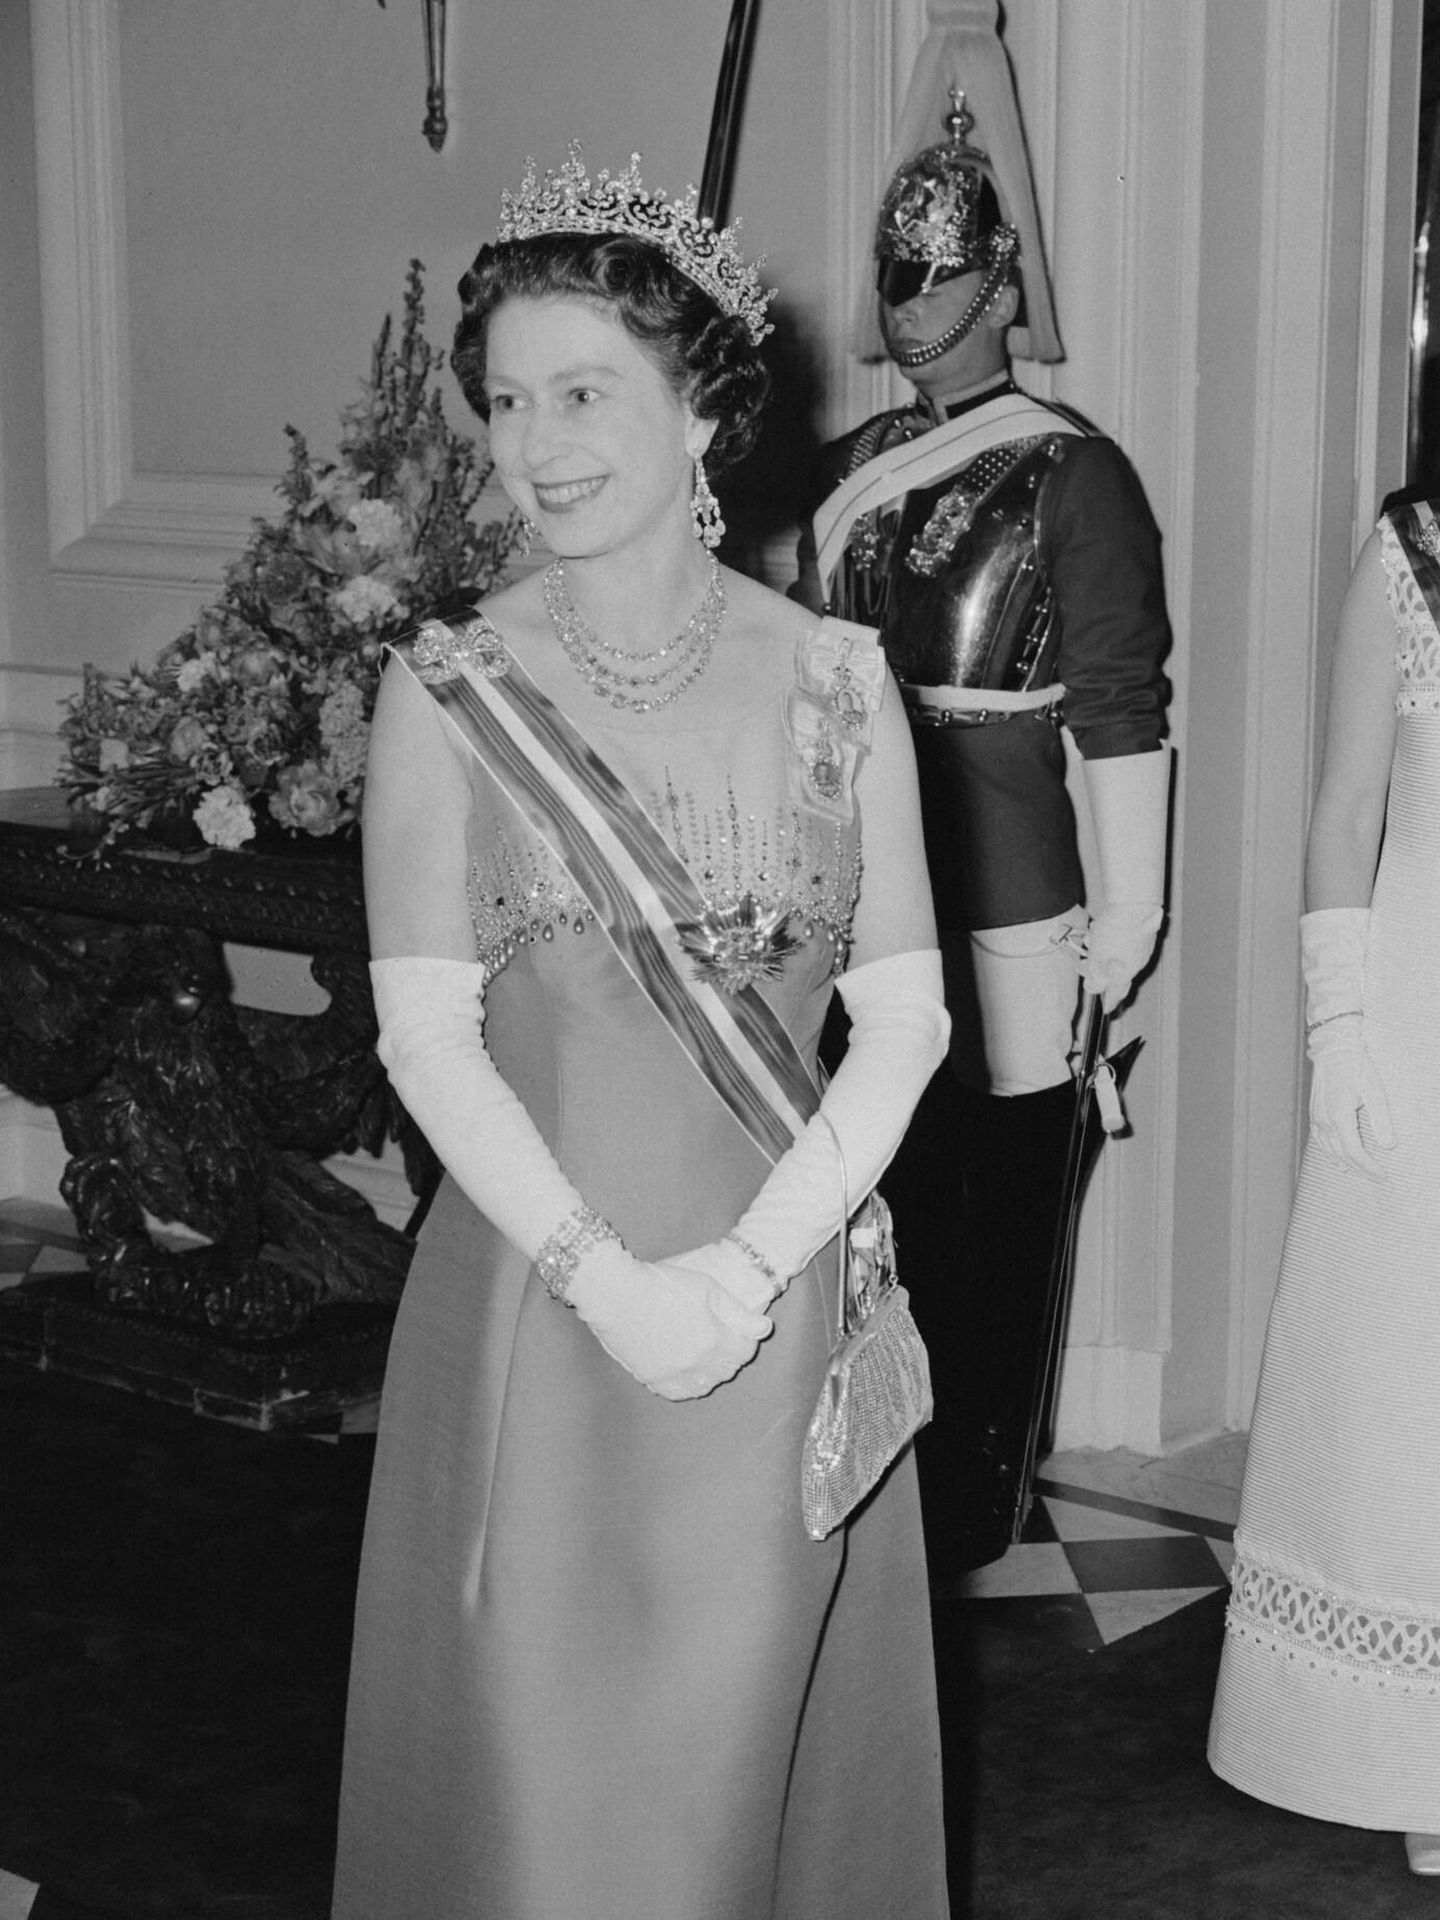 Isabel II, en 1969 durante una visita a Austria. (Getty/Daily Express/Hulton Archive/Terry Disney)